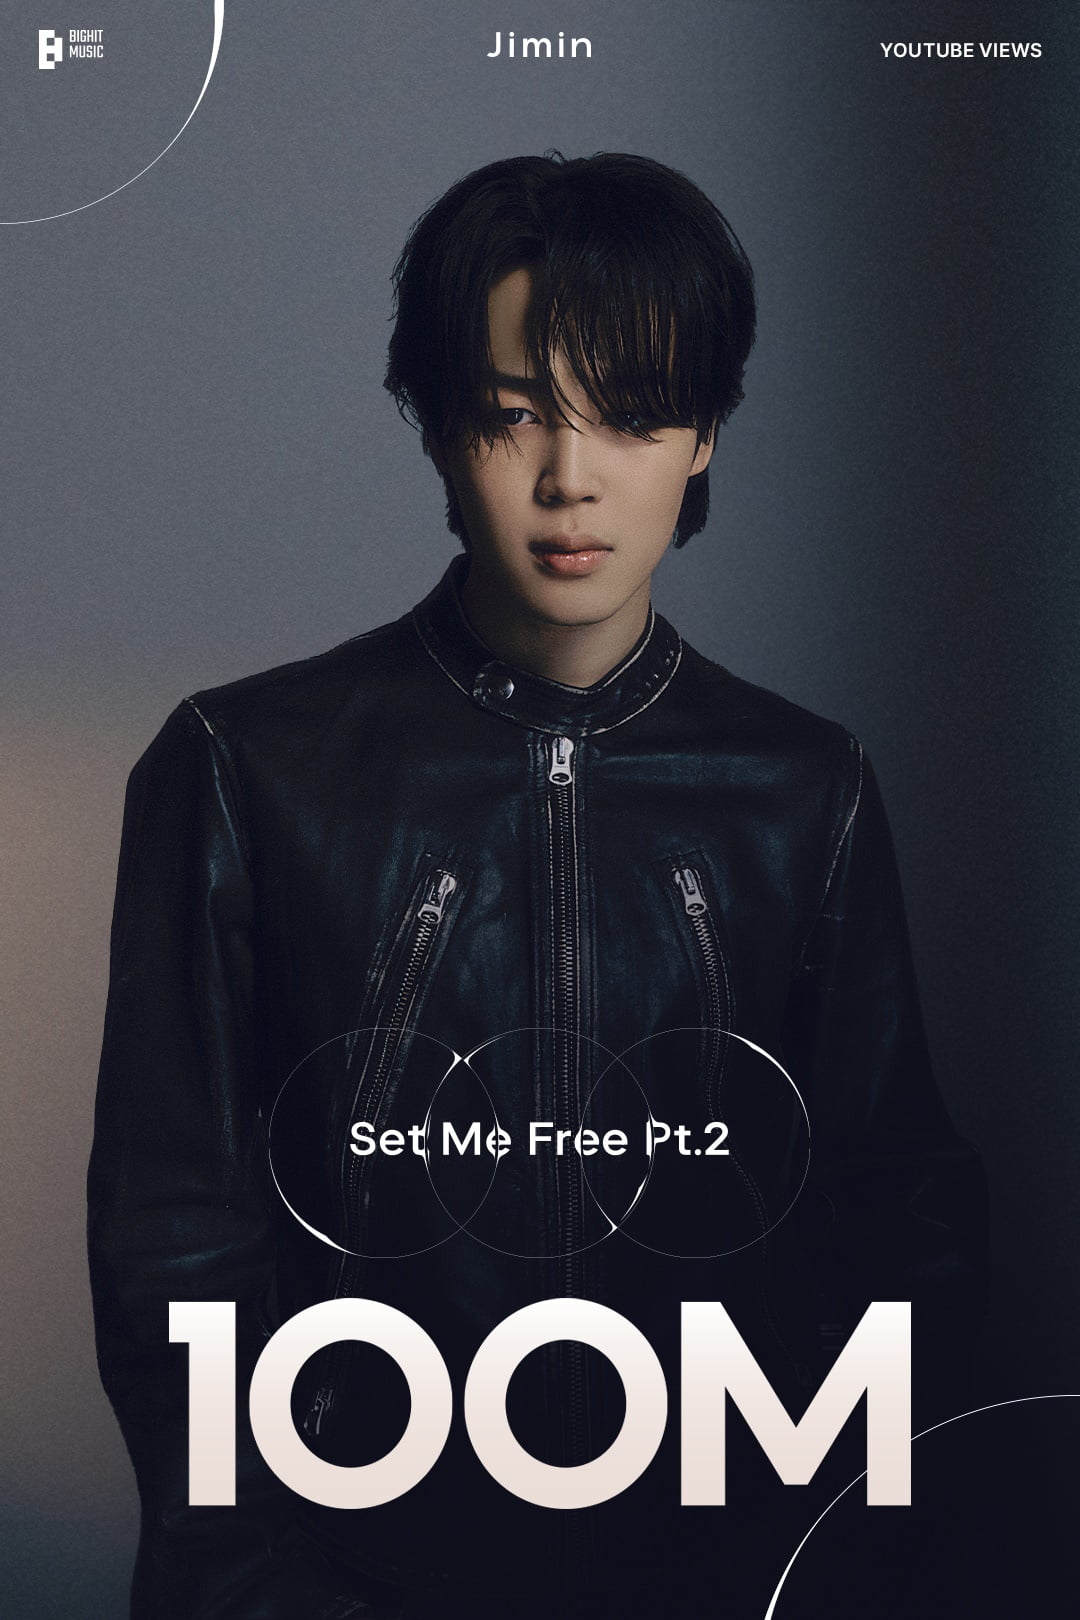 BTS Jimin's 'Set Me Free Pt.2' music video surpasses 100 million views